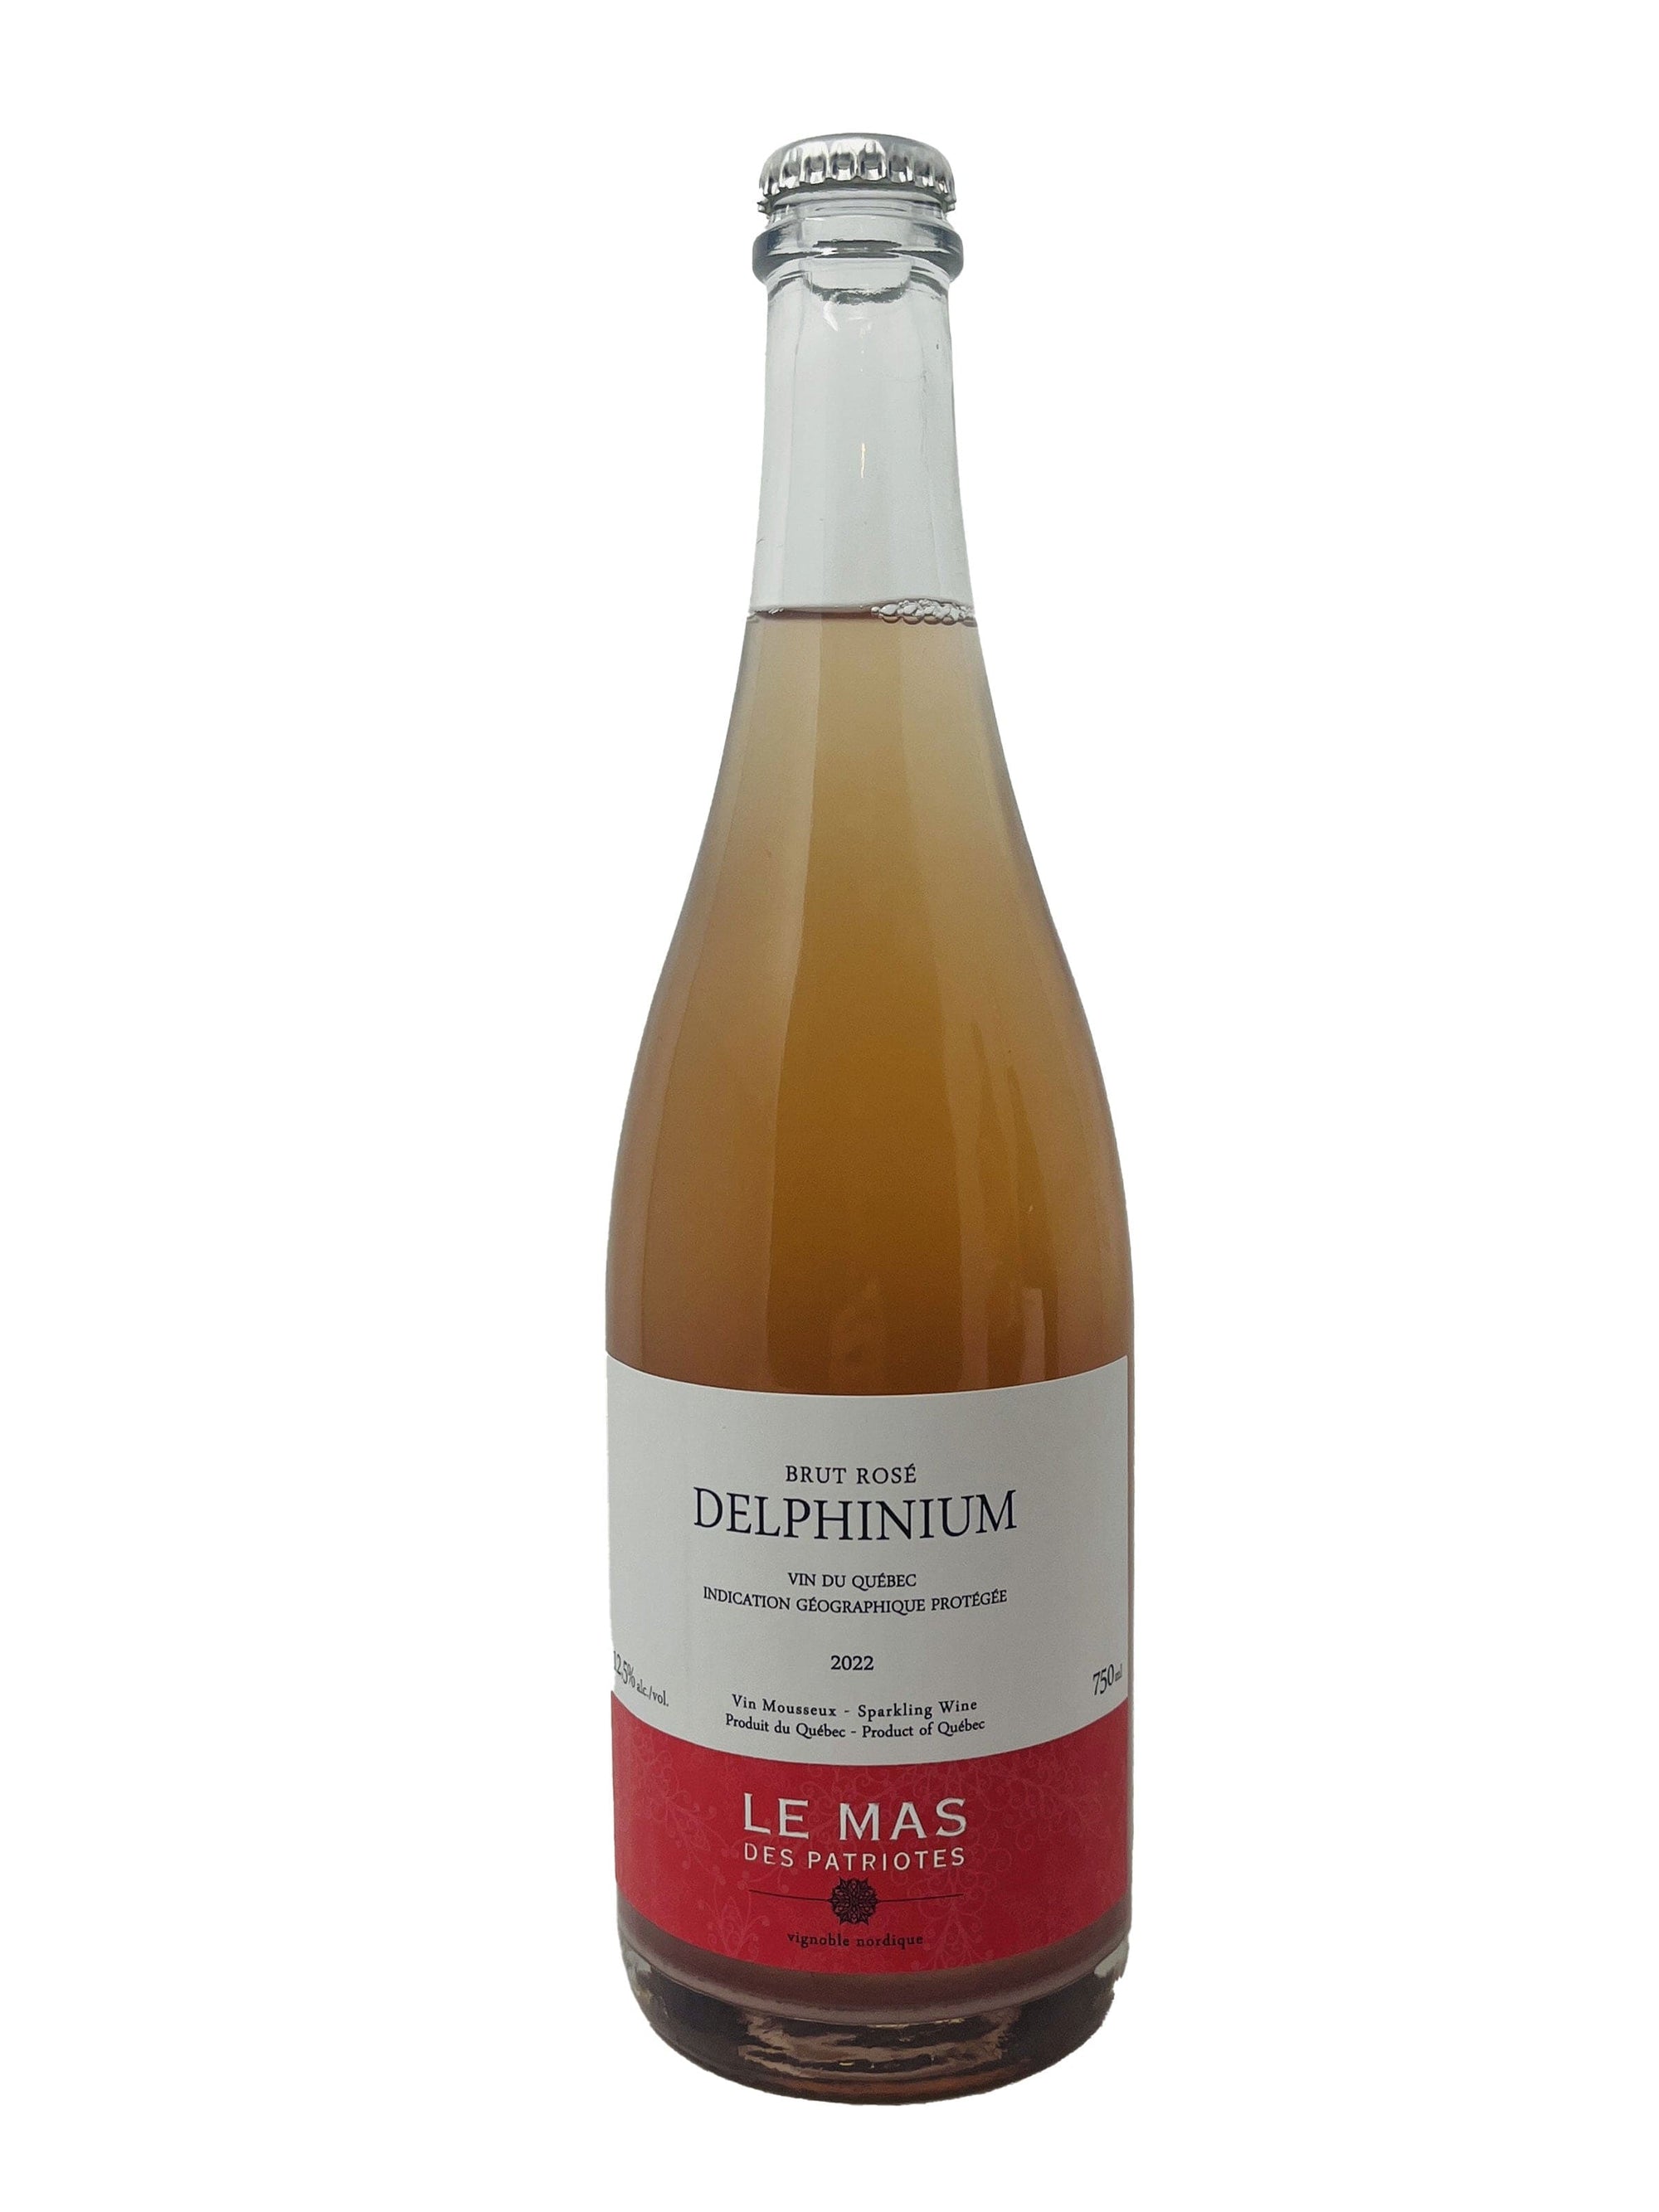 Le Mas des Patriotes vin Delphinium 2022 - Vin mousseux rosé du Vignoble Le Mas des Patriotes